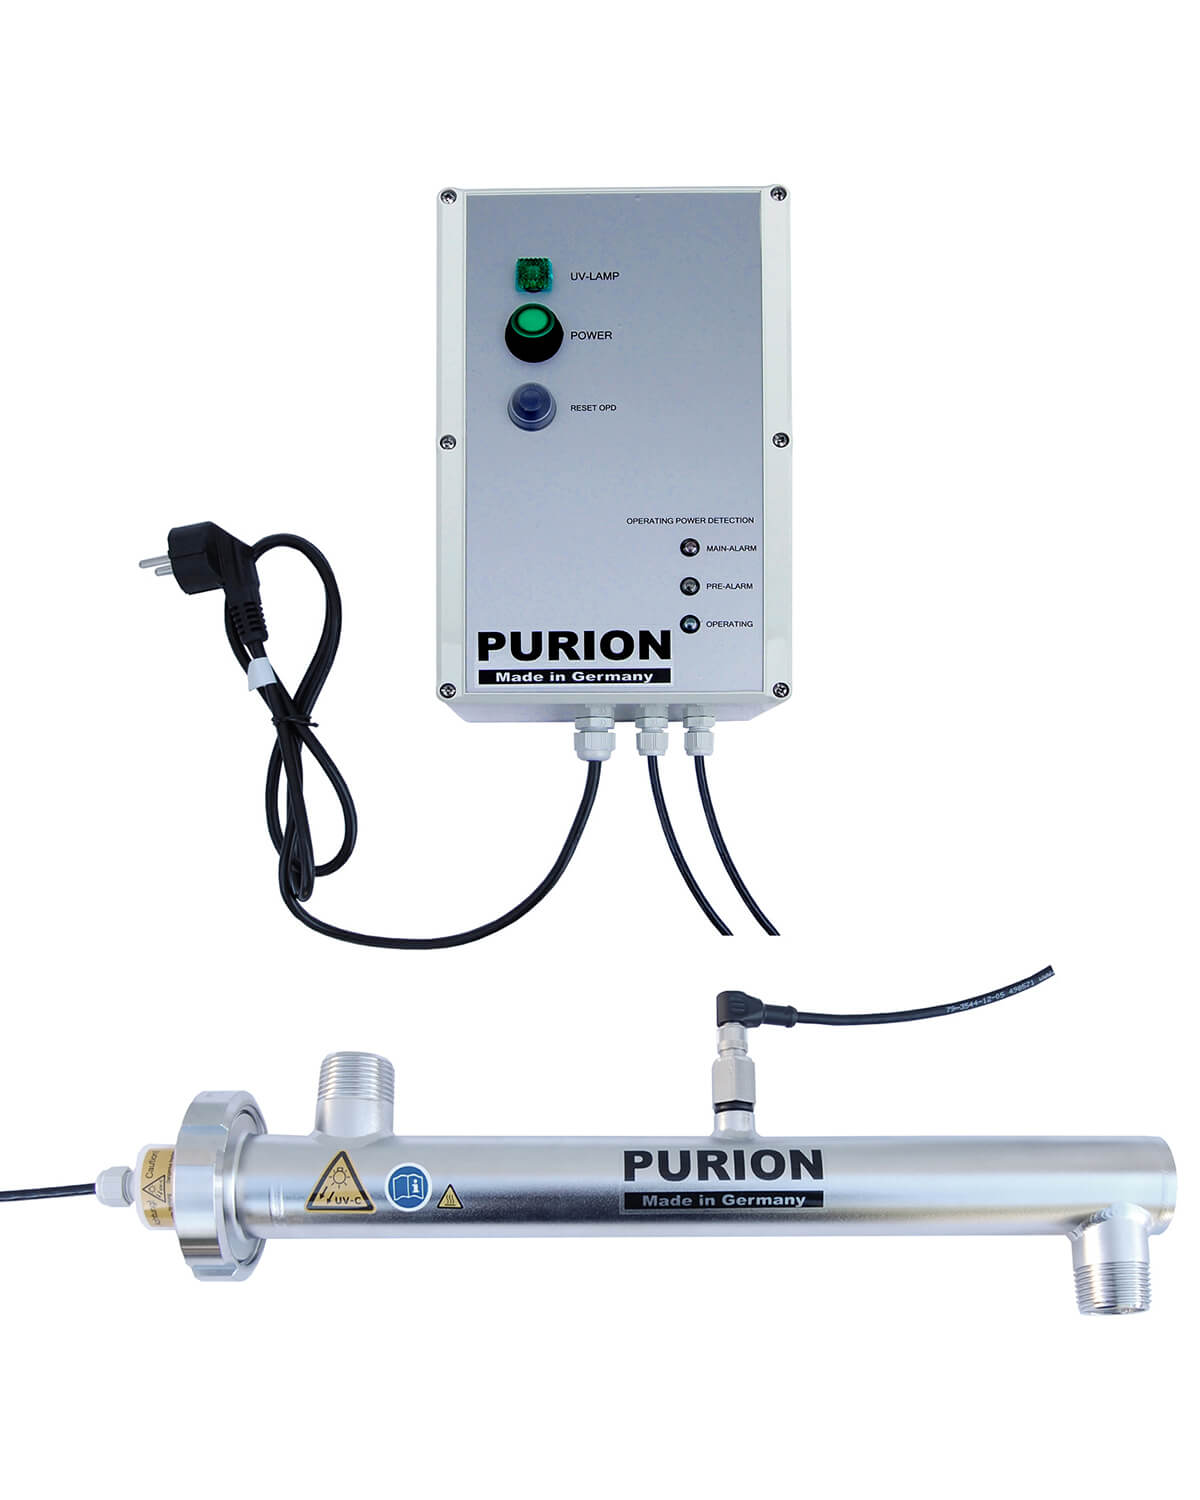 Purion GmbH ist ein hochmodernes UV-C-Desinfektionssystem, das schädliche Bakterien und Legionellen effektiv beseitigt. Mit seiner fortschrittlichen Technologie sorgt PURION 1000 H OPD für Zuverlässigkeit und Effizienz.